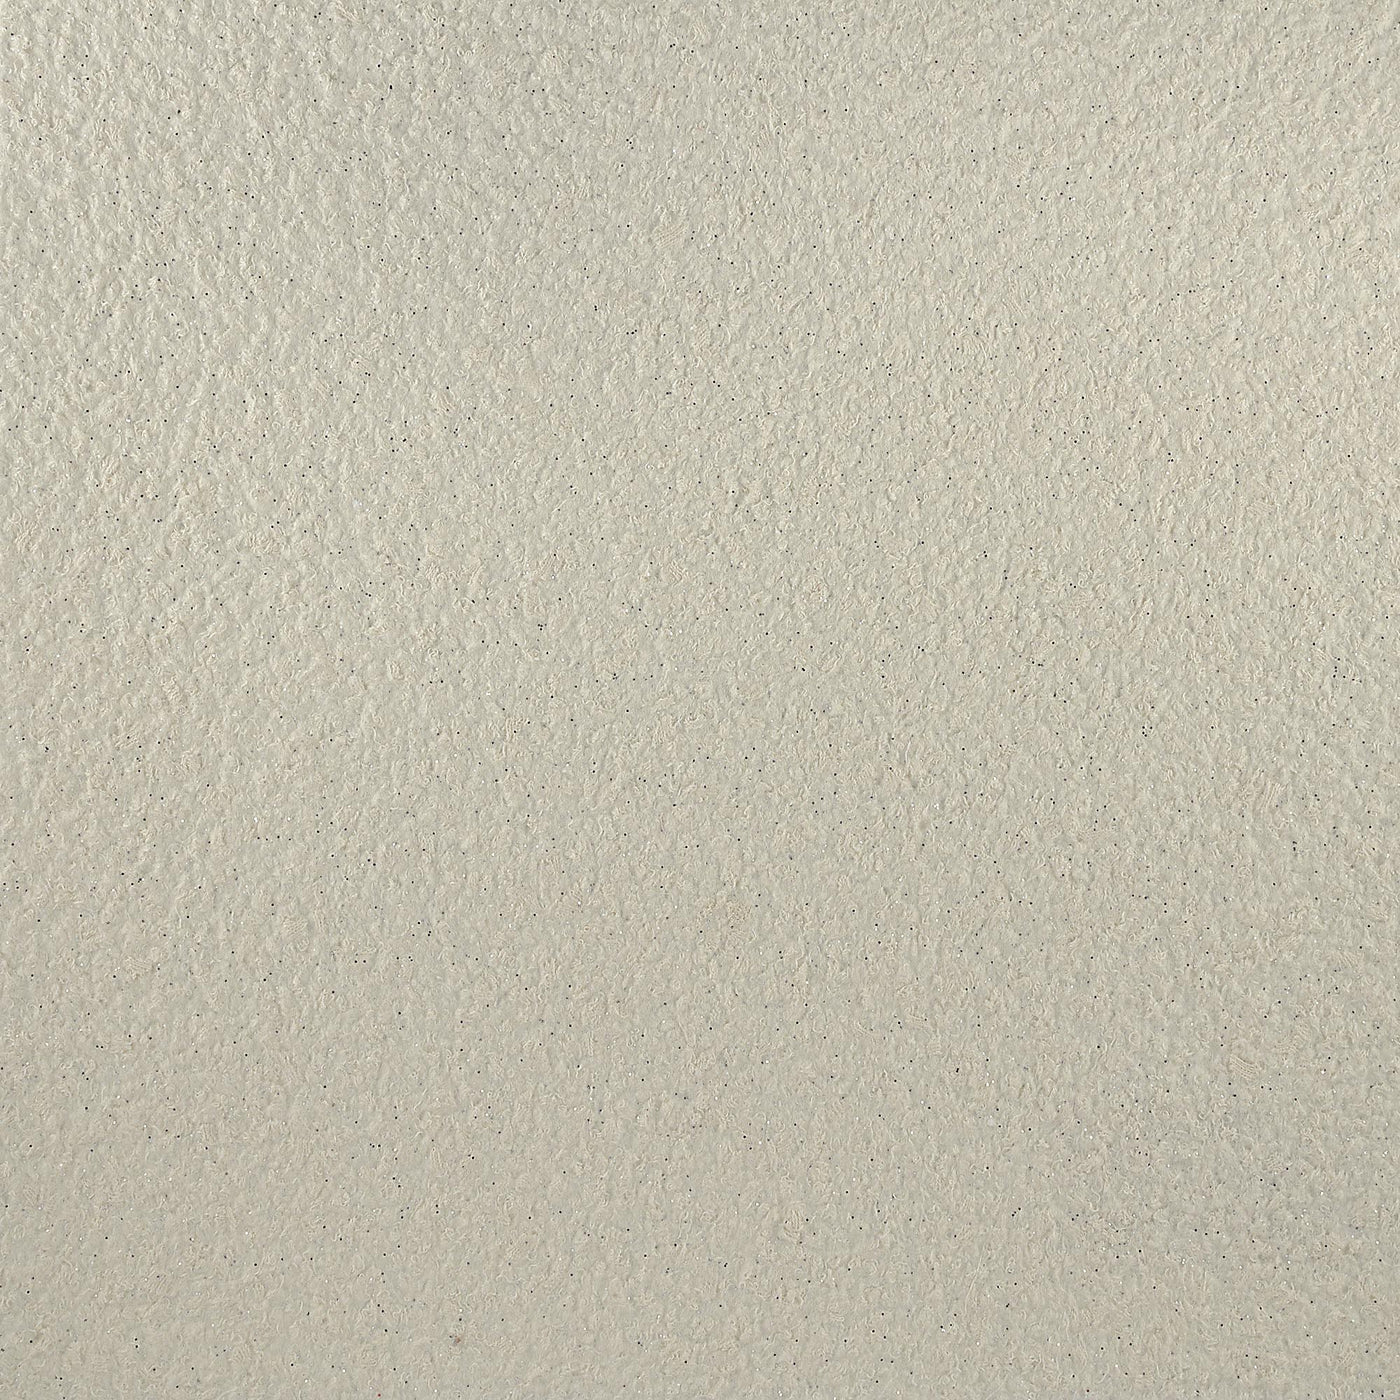 Cotton plaster color decor vanilla with silver mica